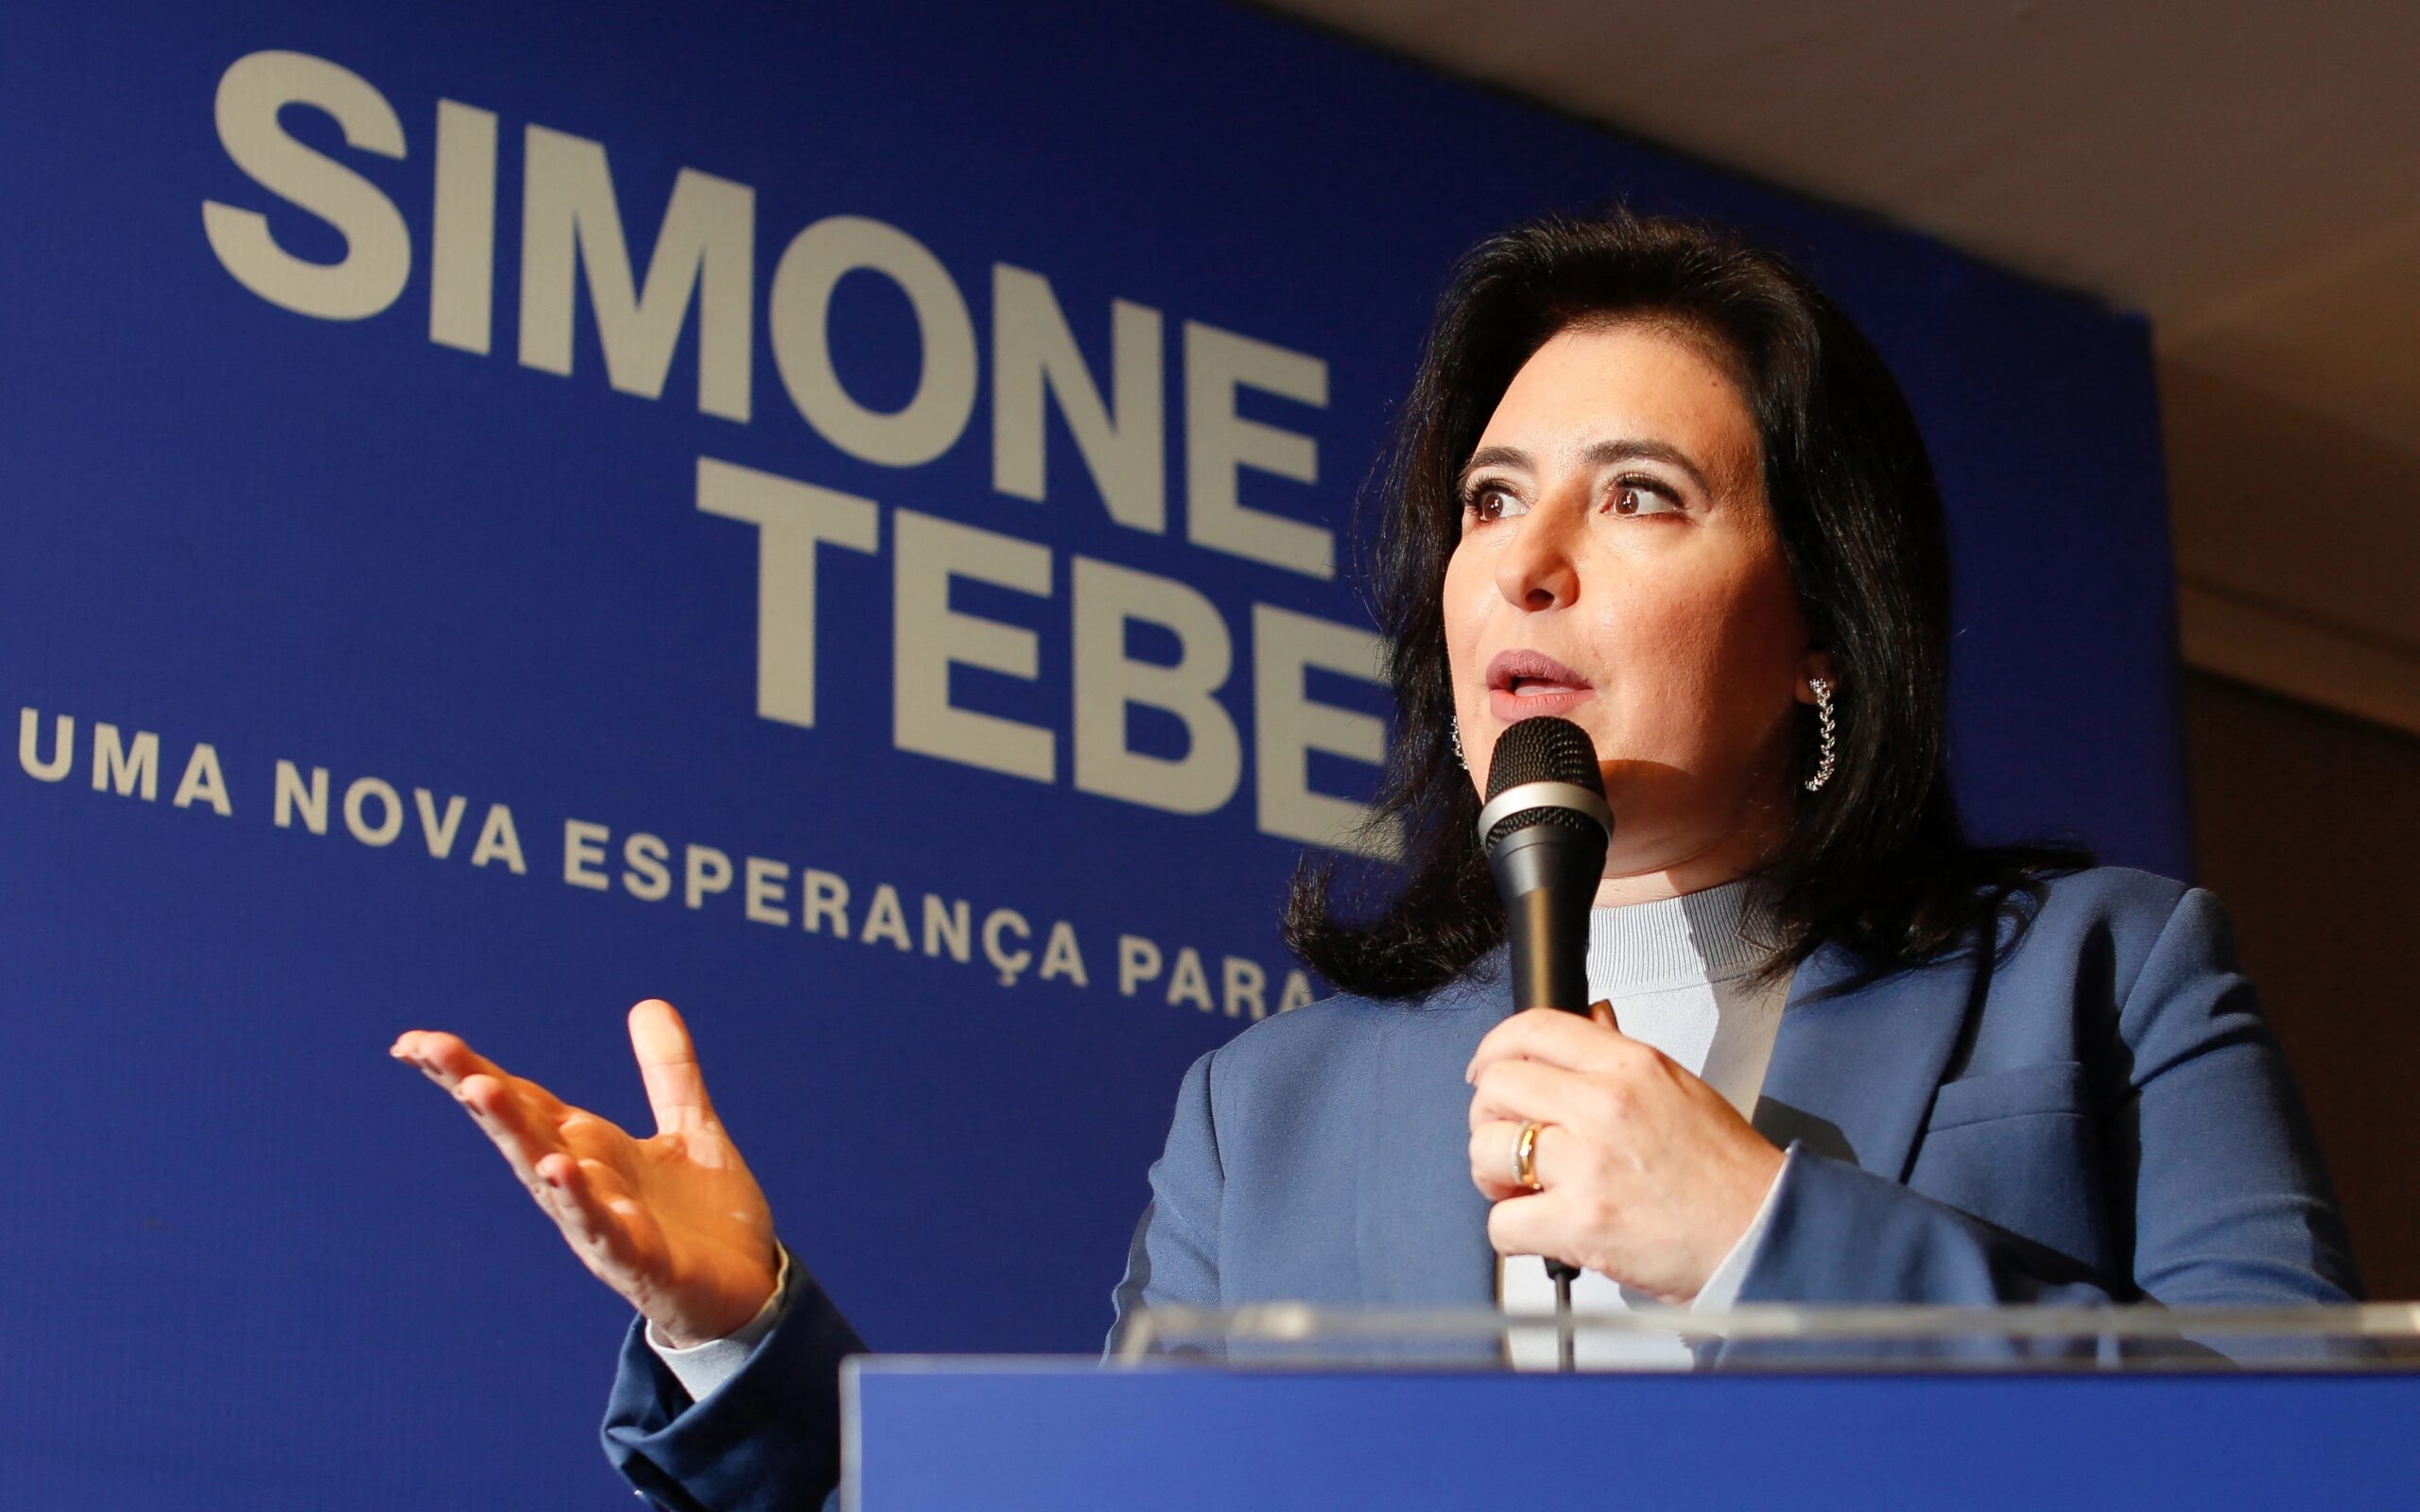 De 2005 a 2010, Simone Tebet foi prefeita de sua cidade natal